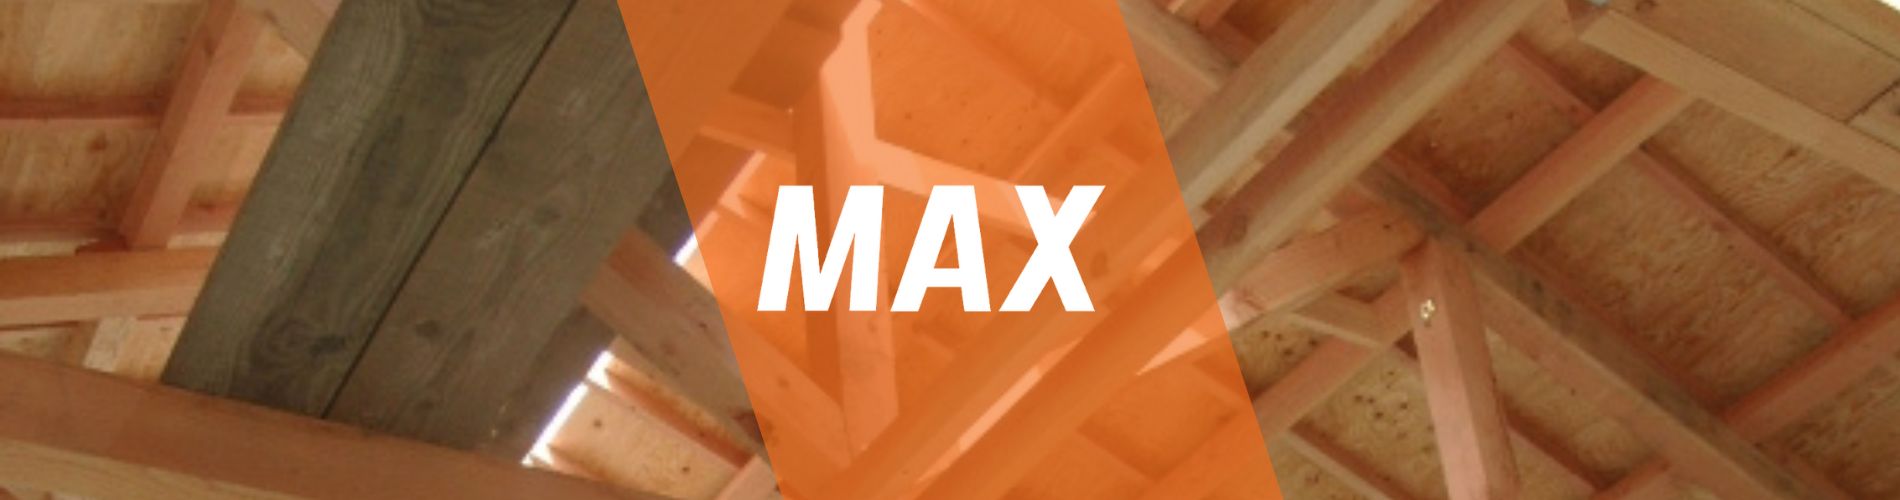 max-マックス